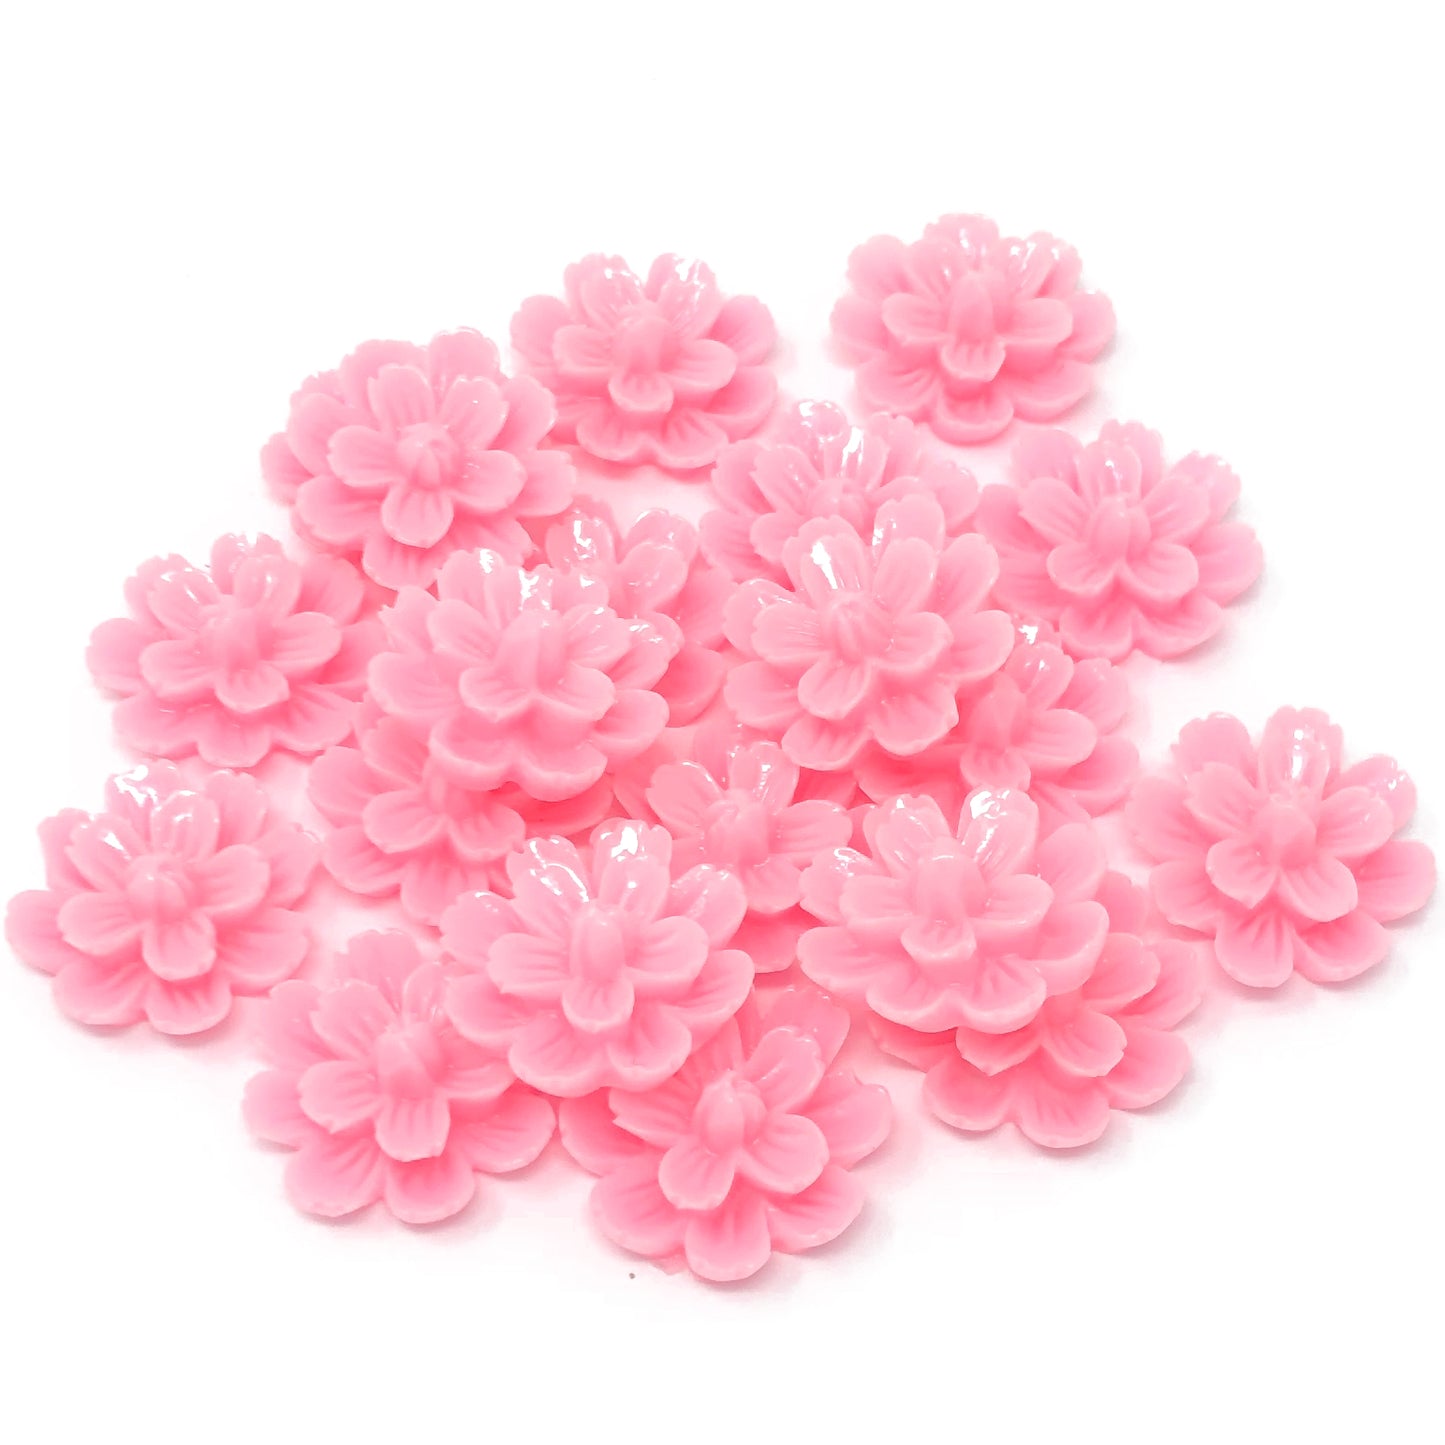 Light Pink 20mm Resin Flower Flatbacks - Pack of 20